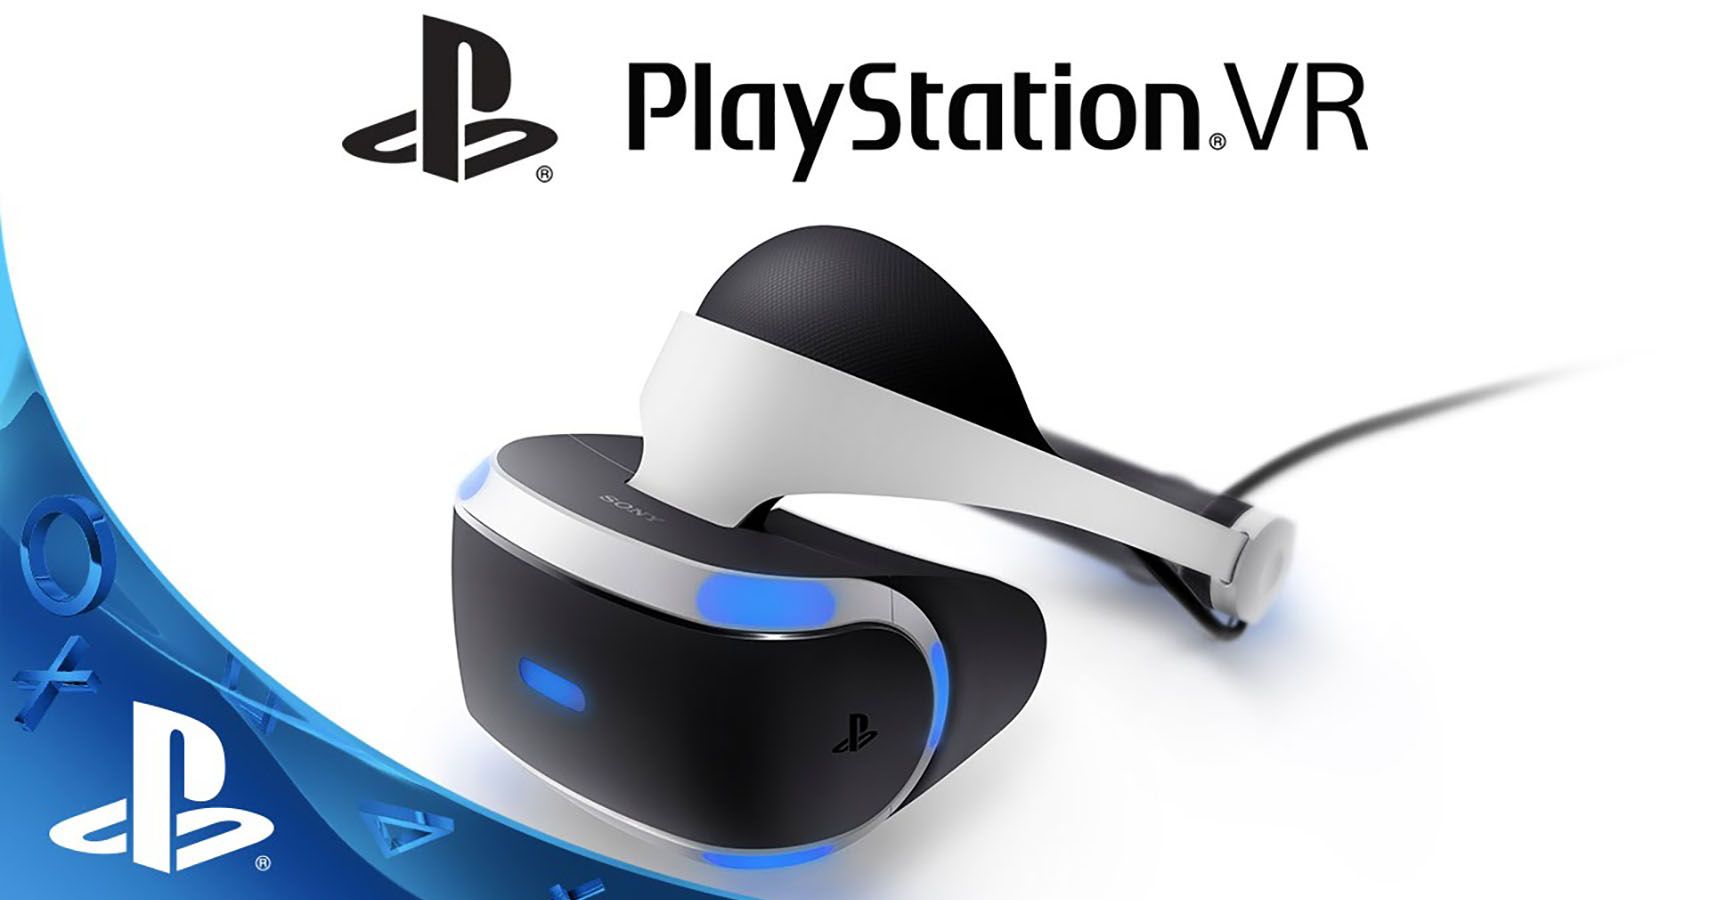 Original PlayStation VR advertising